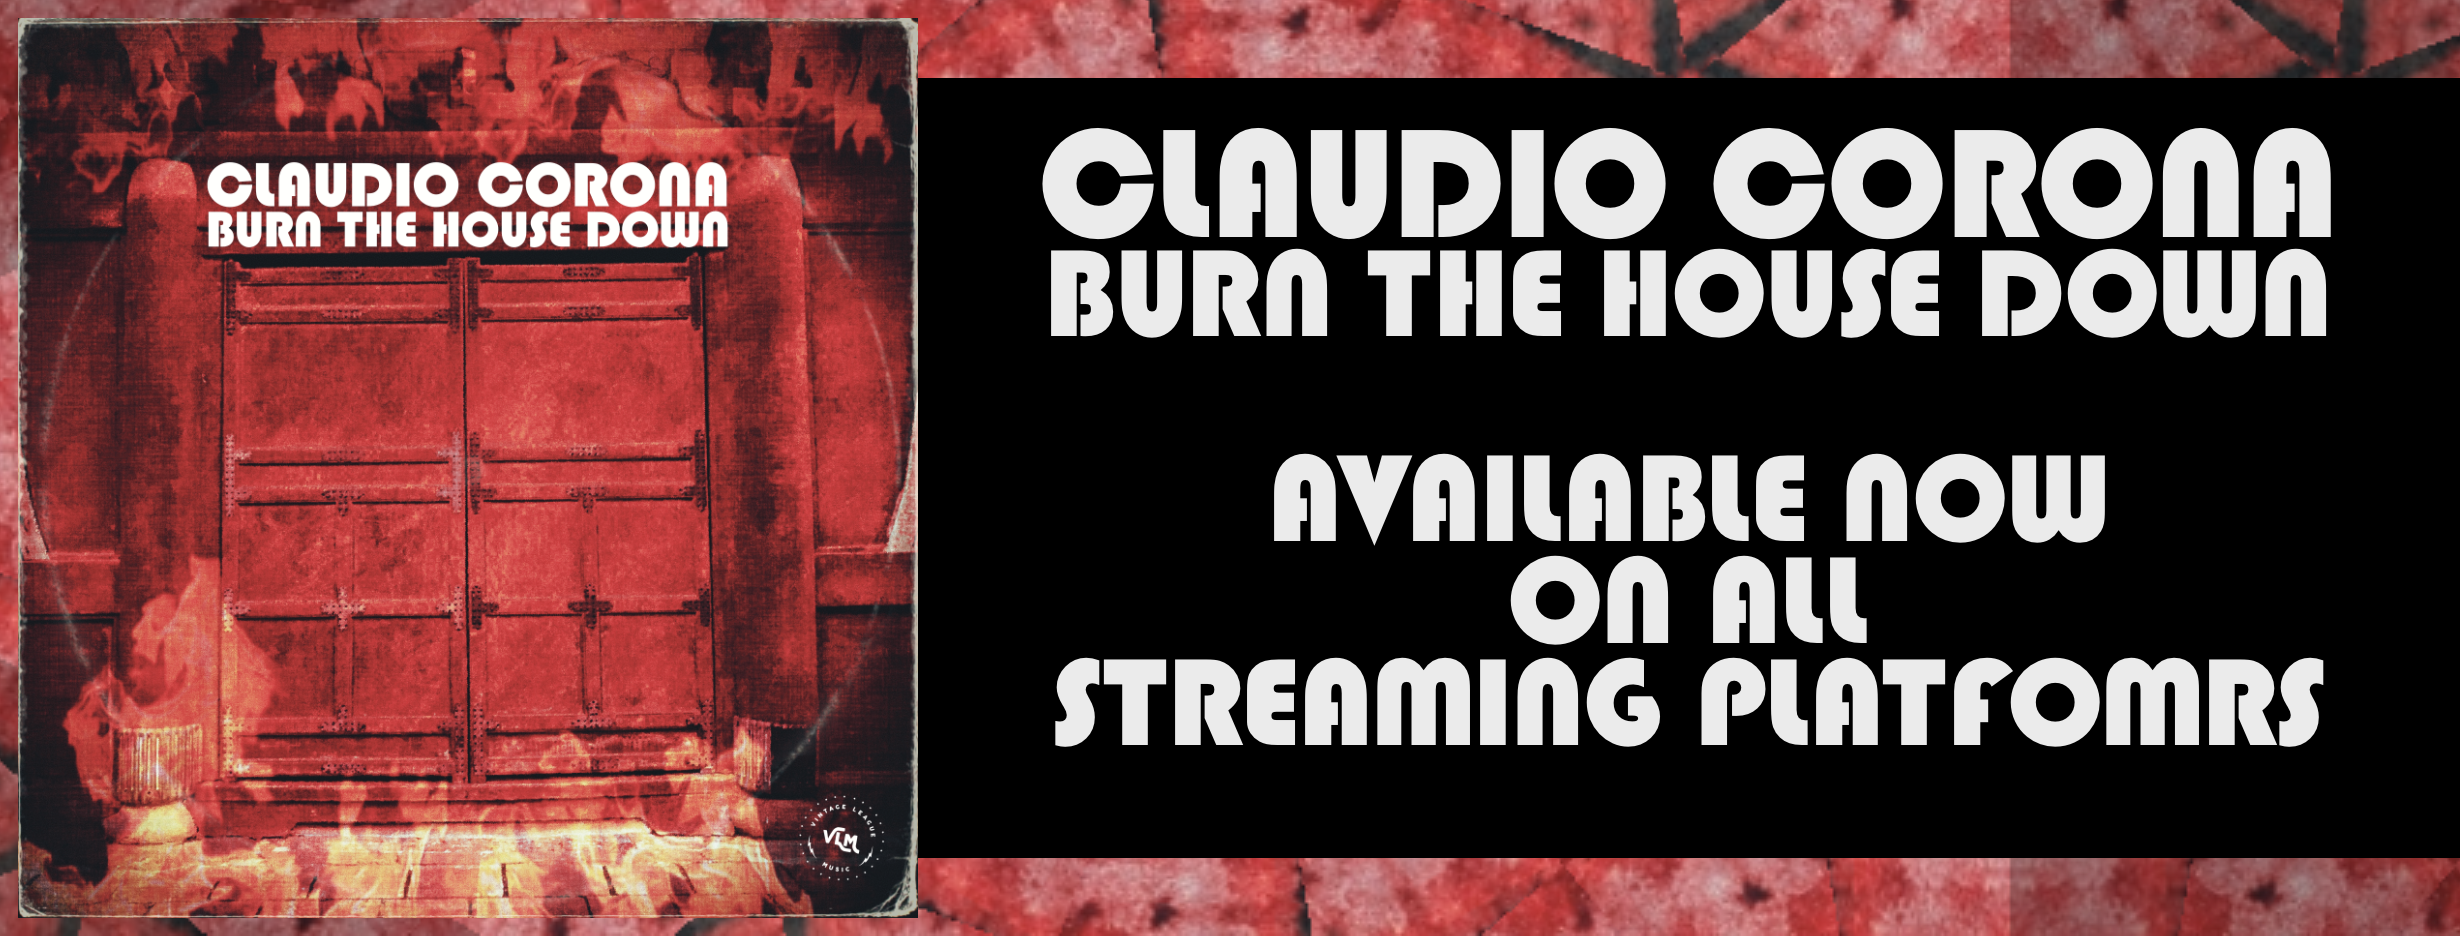 Claudio Corona - Bun The House Down - single banner@3x.png